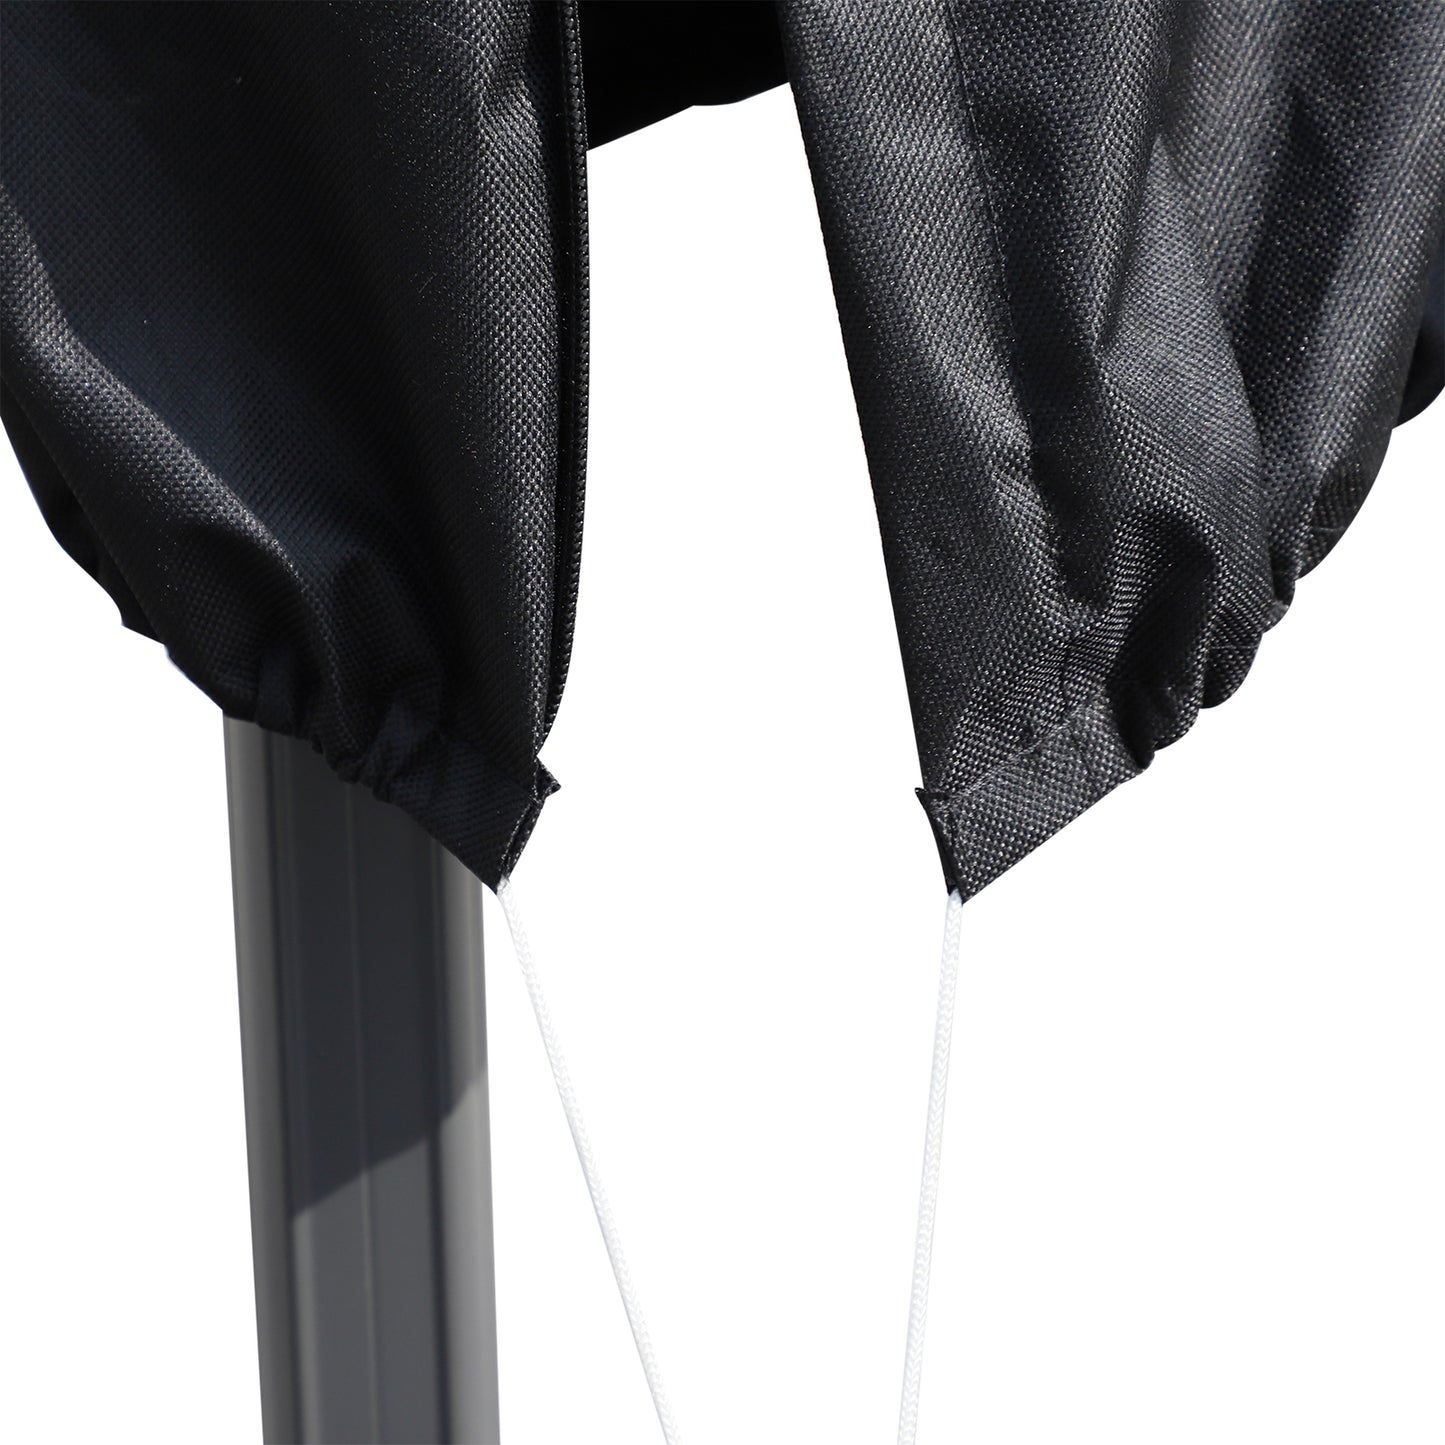 Outsunny Umbrella Parasol Cover, 200Lx50/80W cm-Black